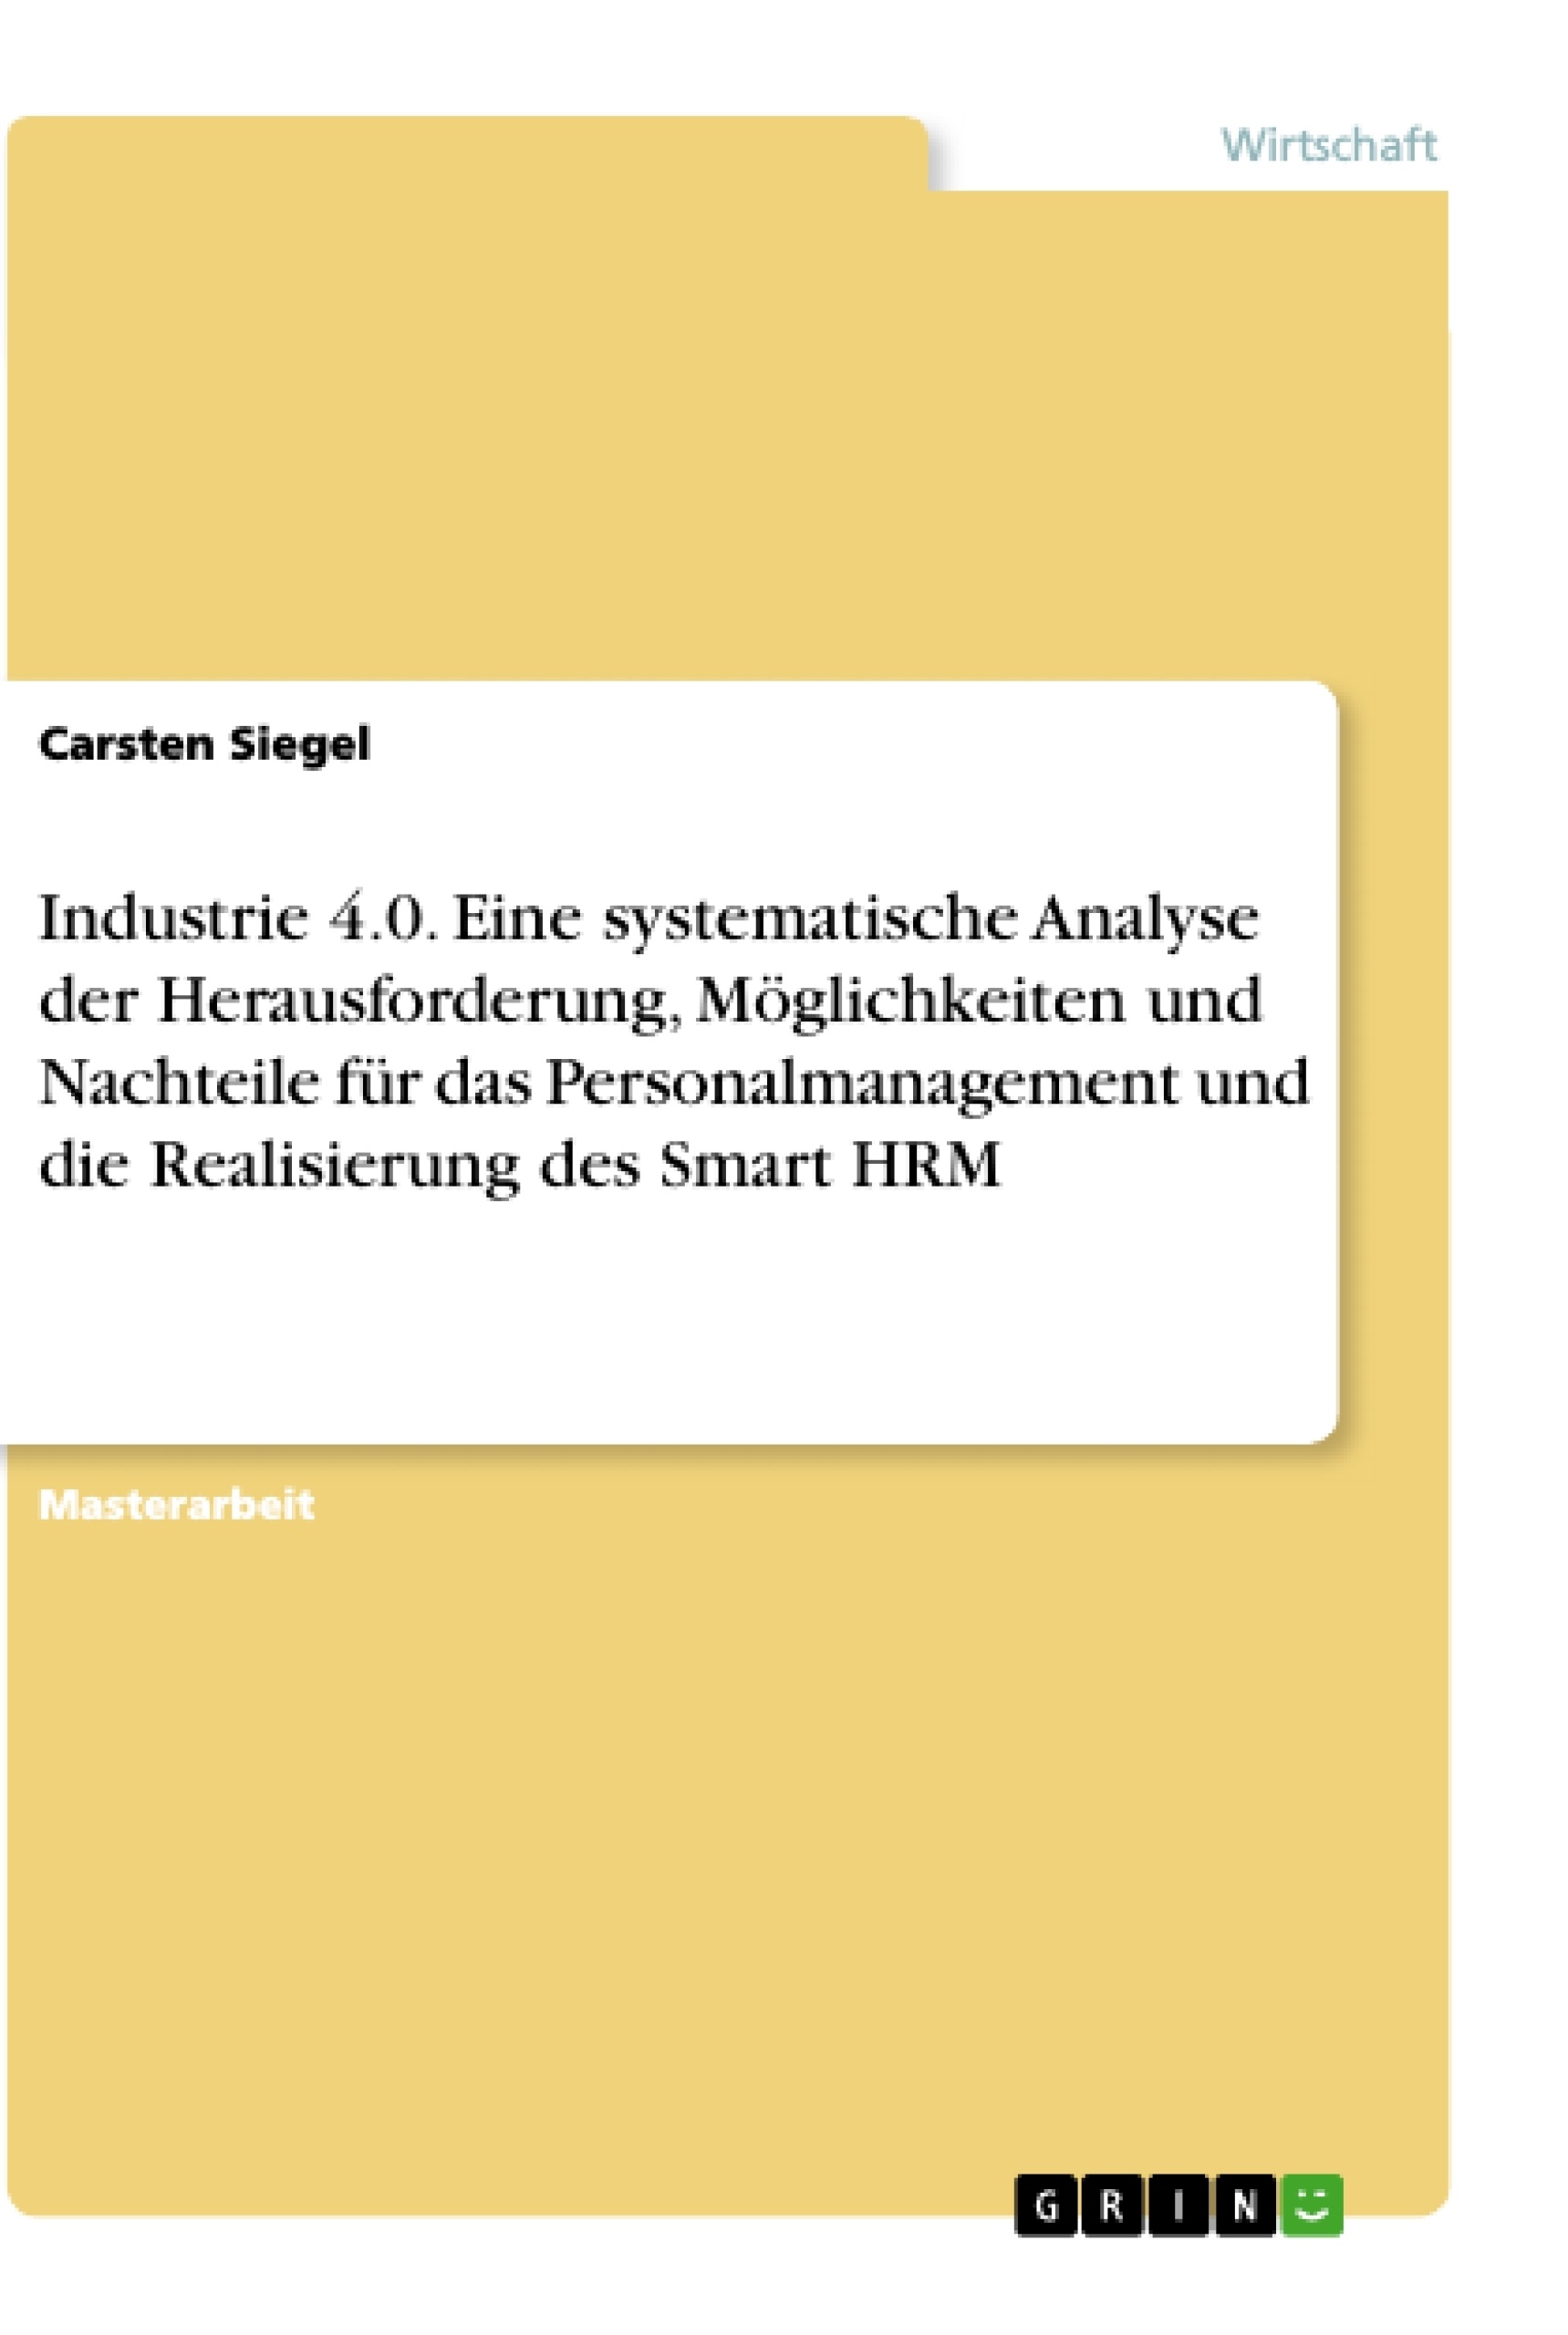 Title: Industrie 4.0. Eine systematische Analyse der Herausforderung, Möglichkeiten und Nachteile für das Personalmanagement und die Realisierung des Smart HRM